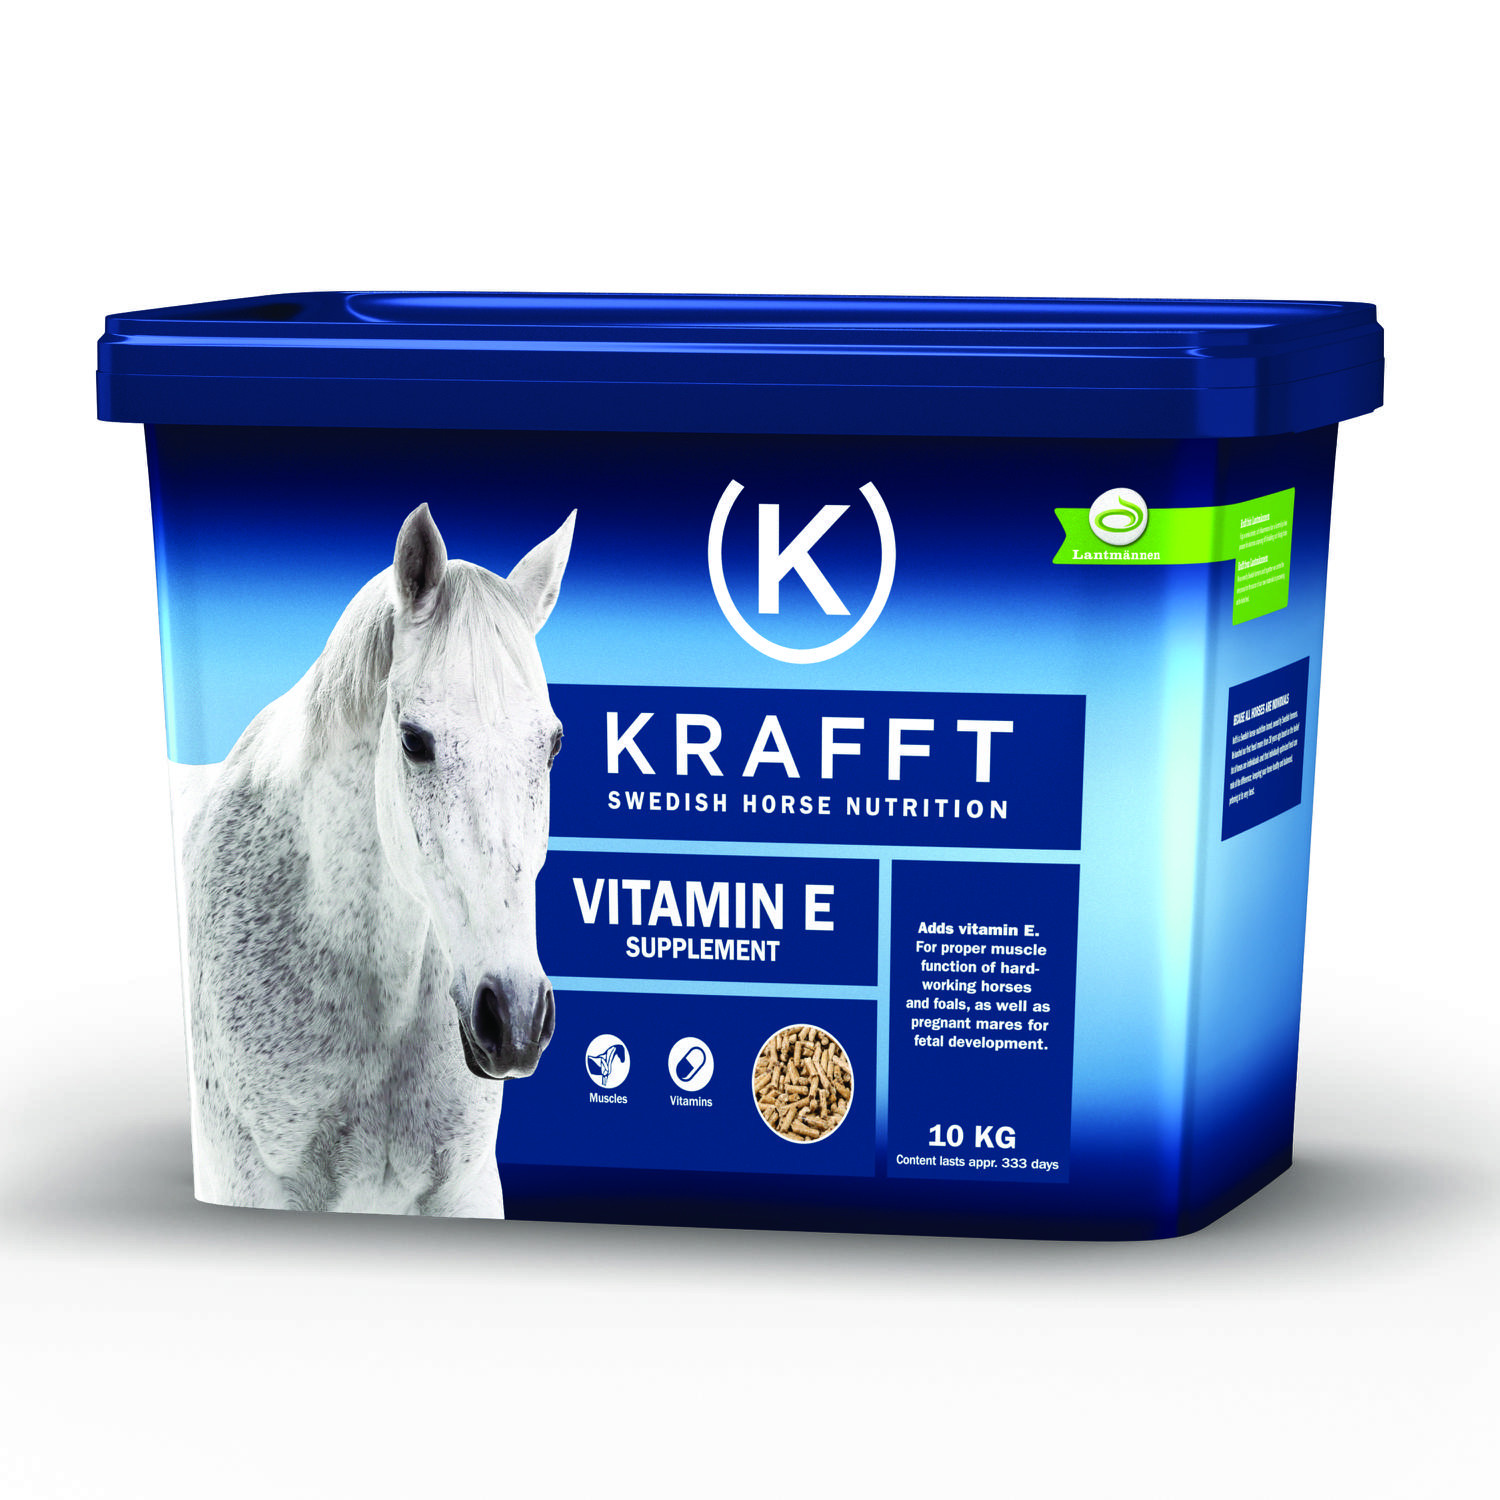 Krafft vitamin e 10kg